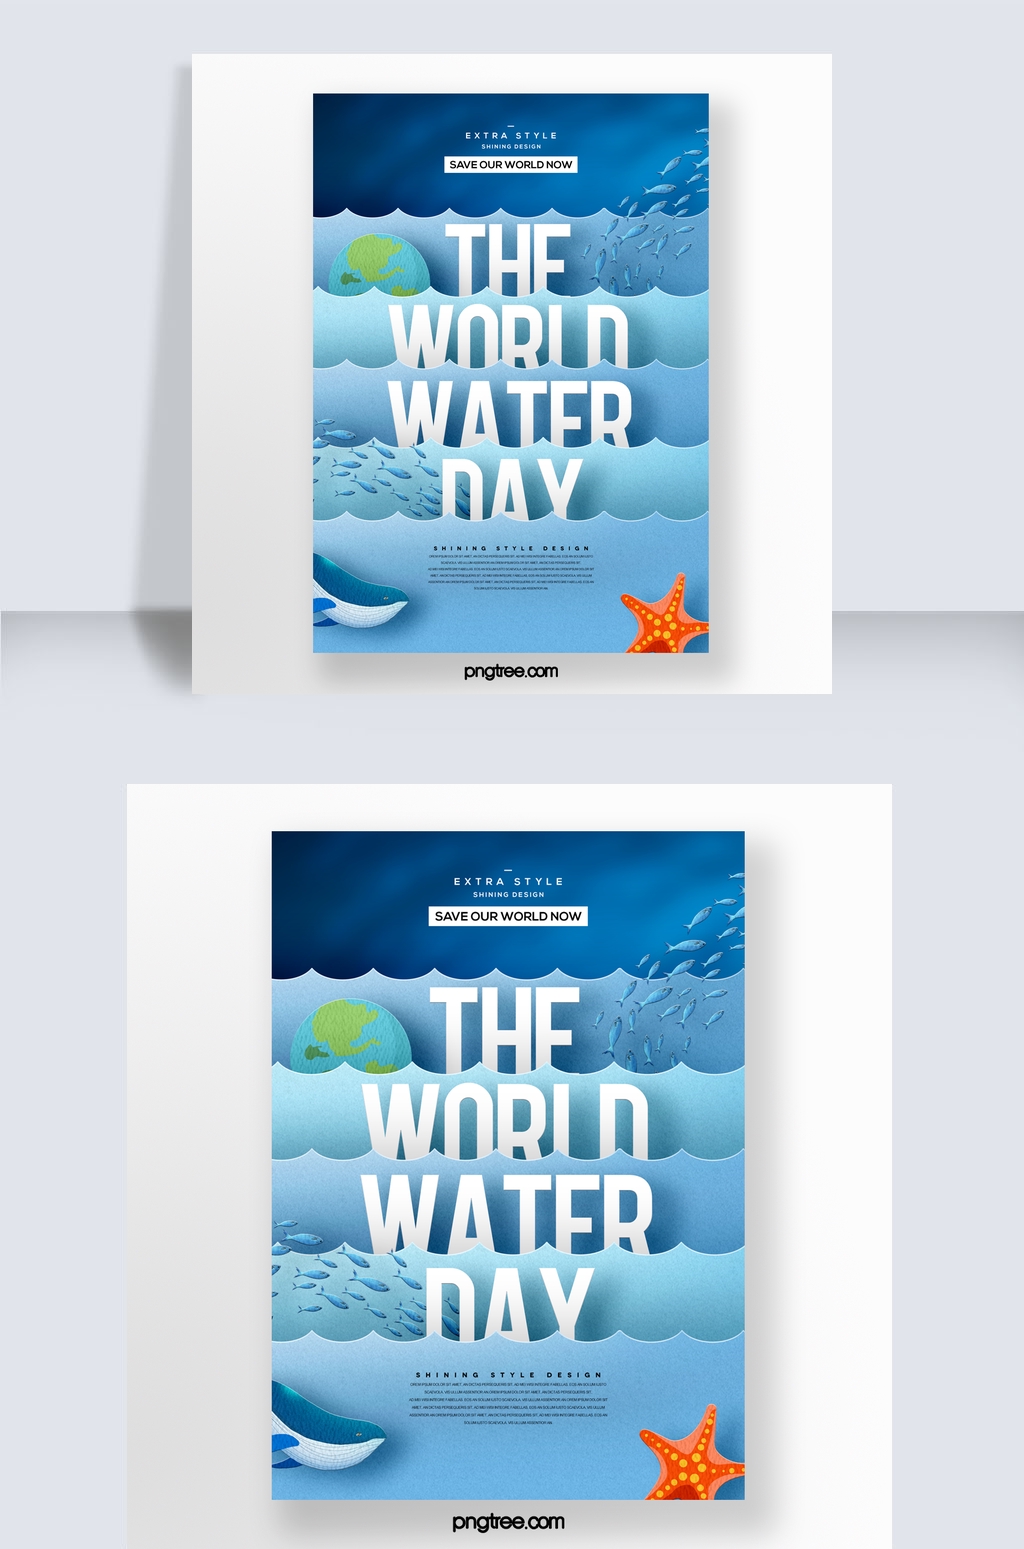 剪纸风格时尚抽象创意世界水日主题宣传海报图片